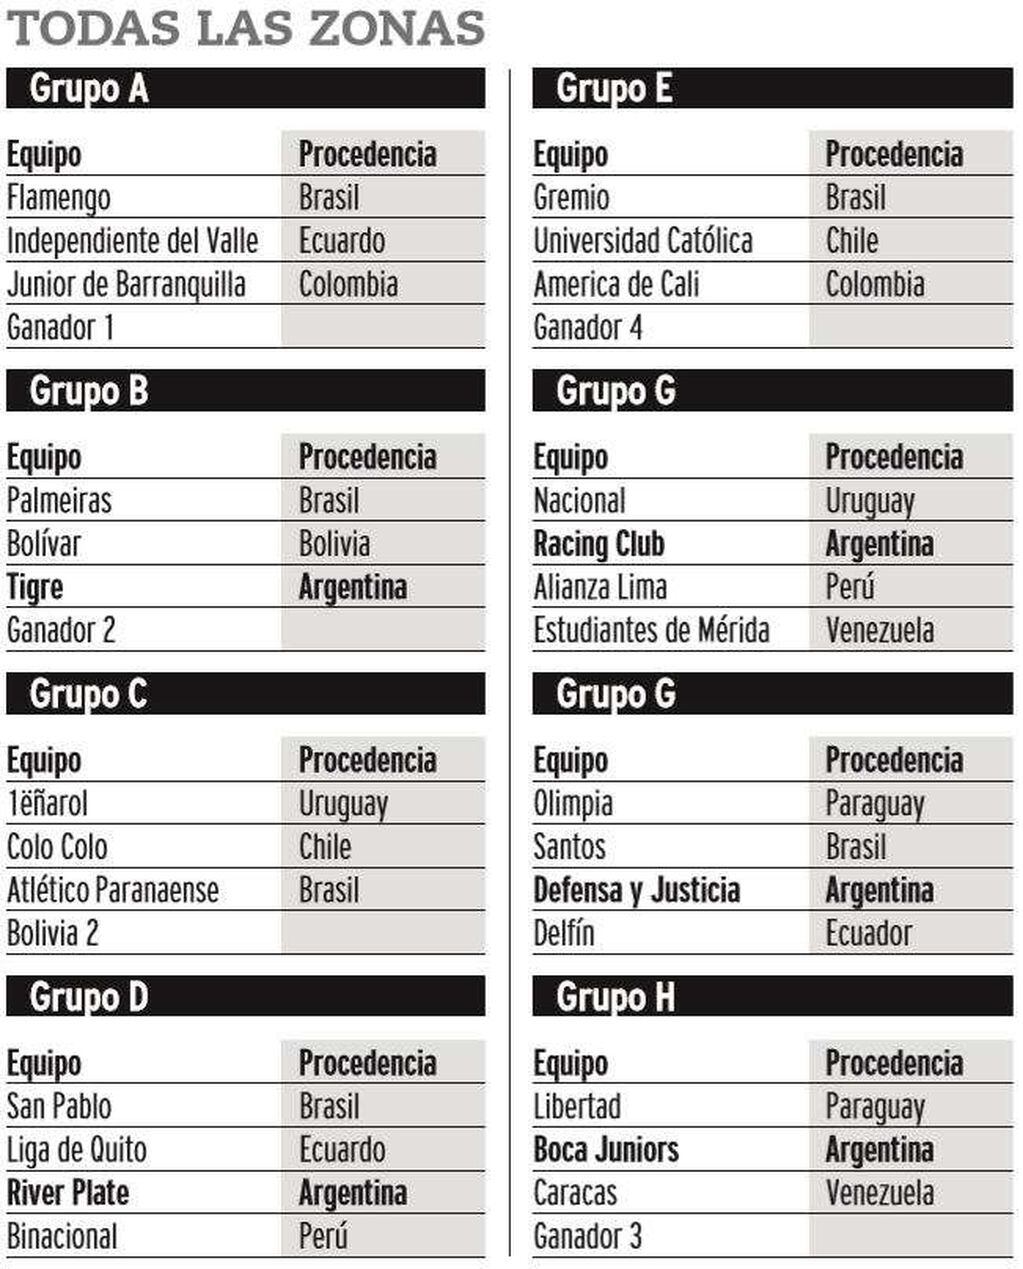 
Grupos de la Copa Libertadores
